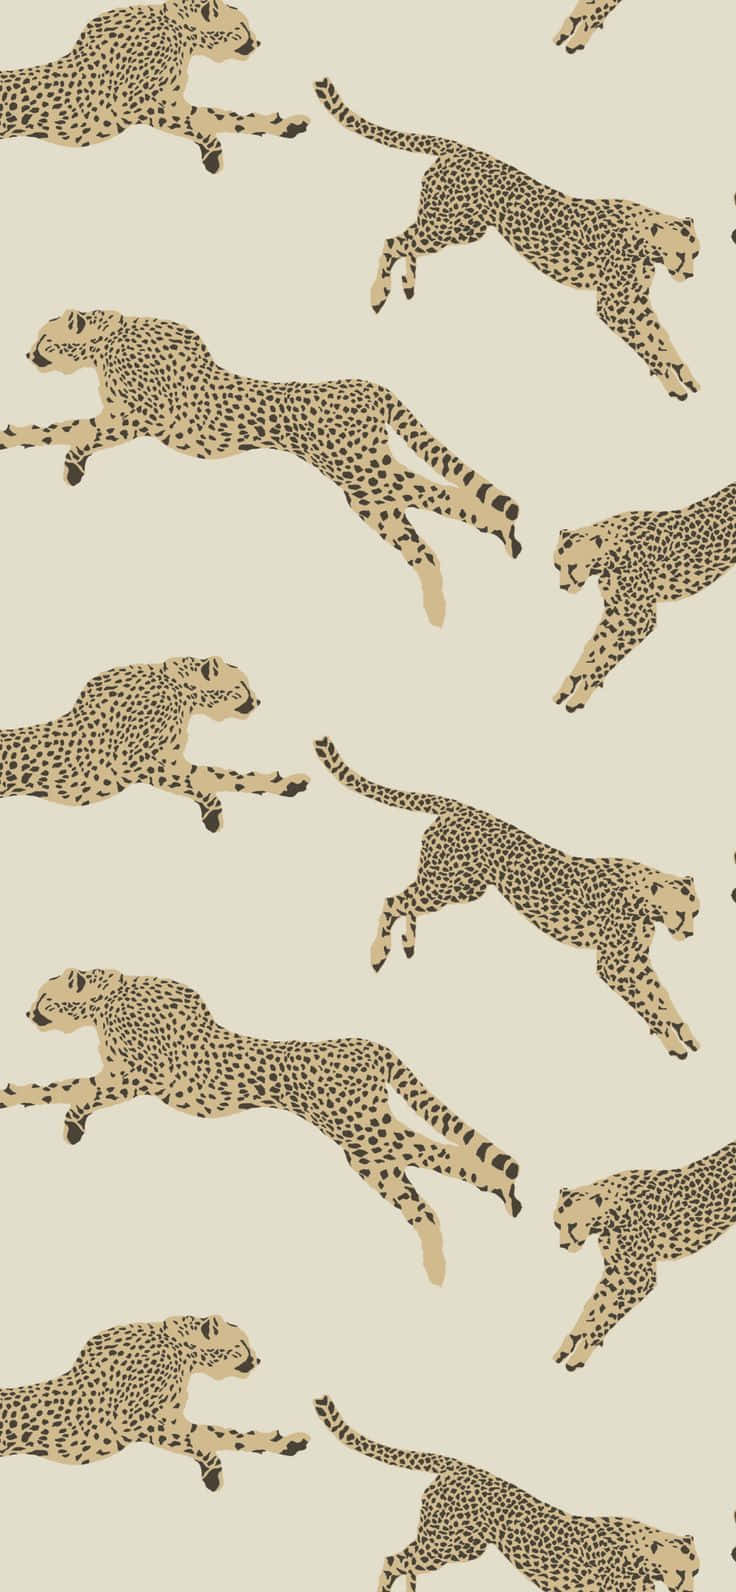 Leaping Leopards Pattern Wallpaper